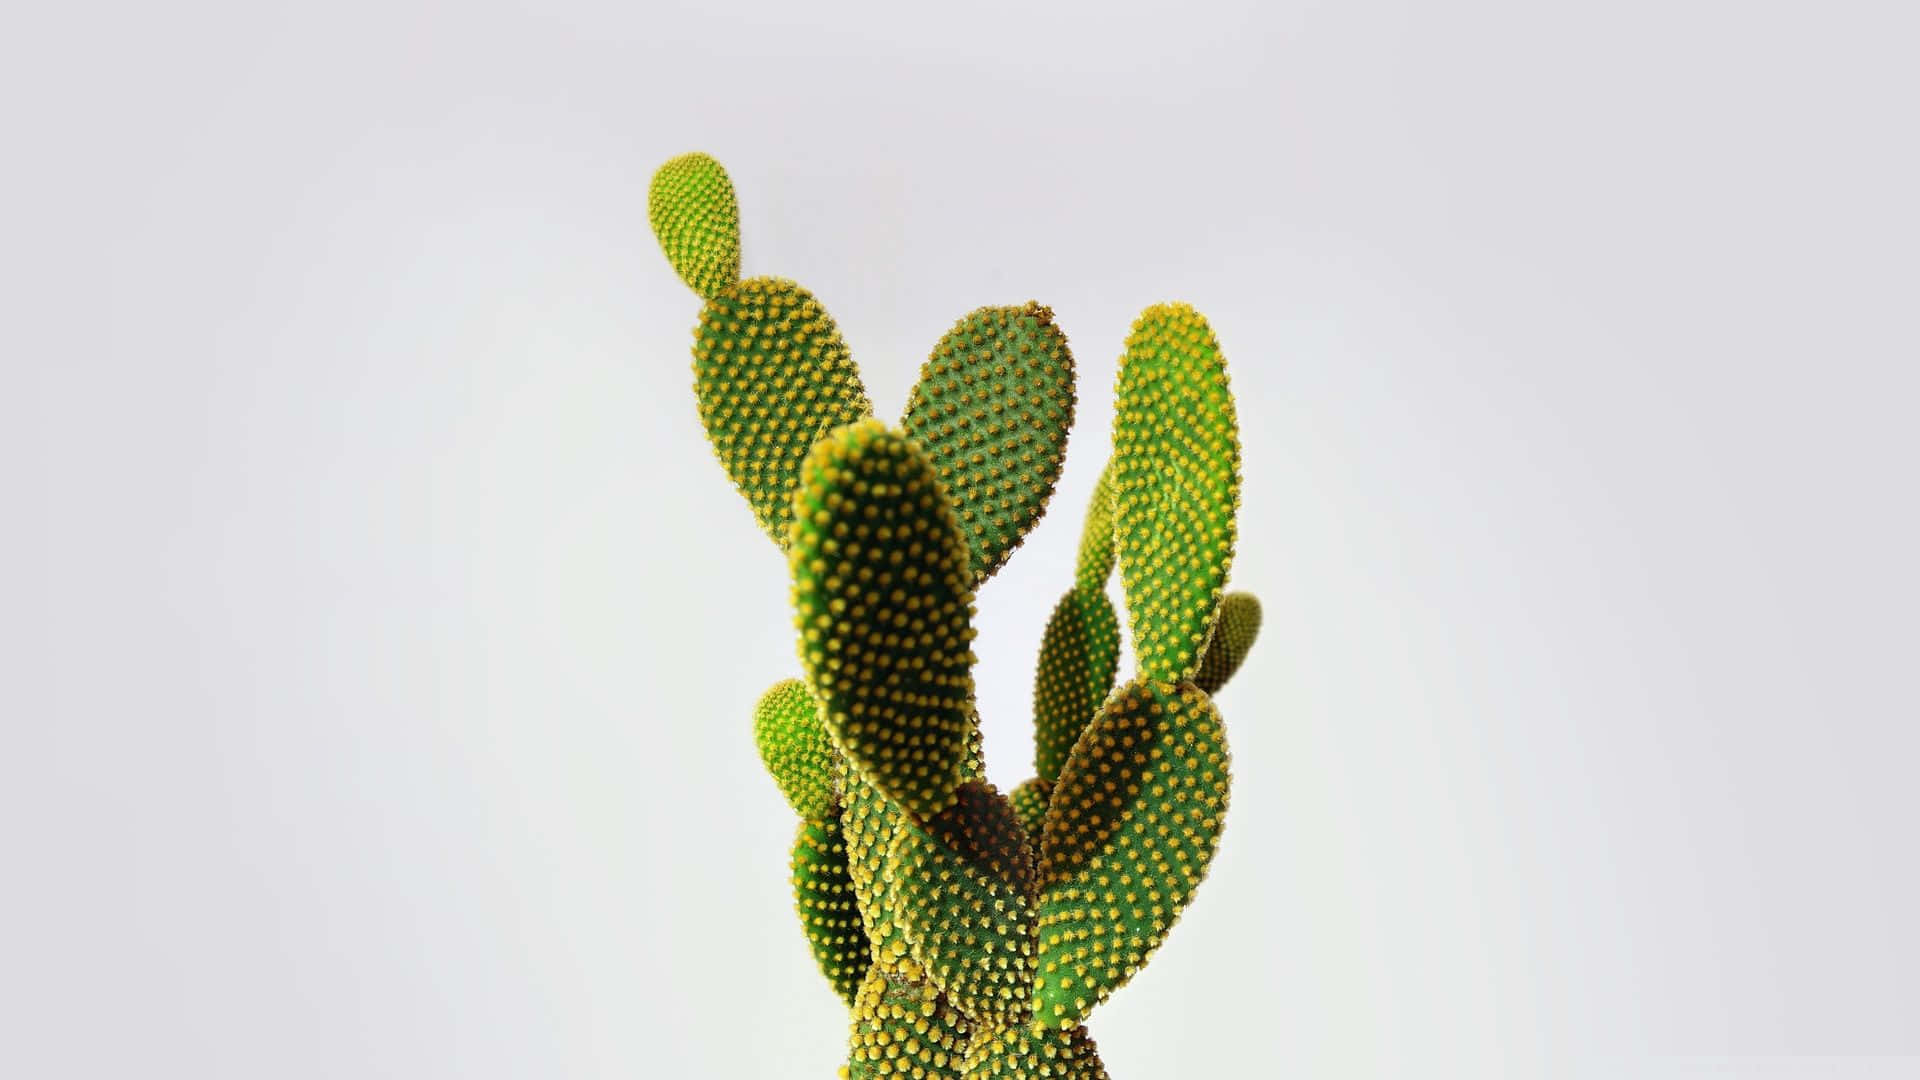 Imagende Cactus Con Orejas De Conejo Minimalista.